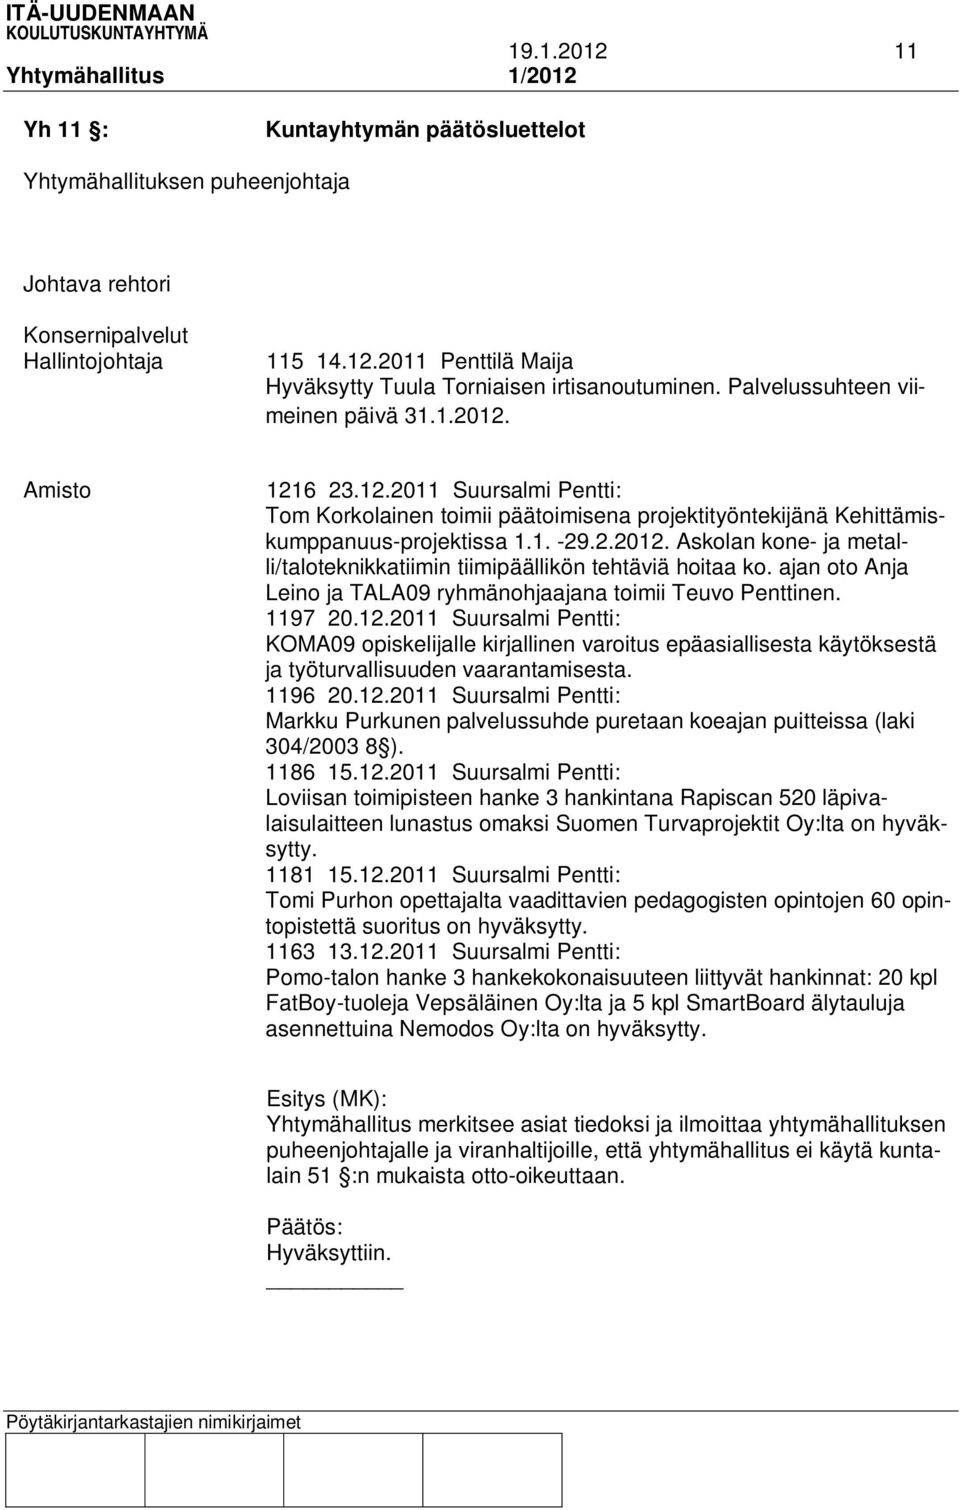 ajan oto Anja Leino ja TALA09 ryhmänohjaajana toimii Teuvo Penttinen. 1197 20.12.